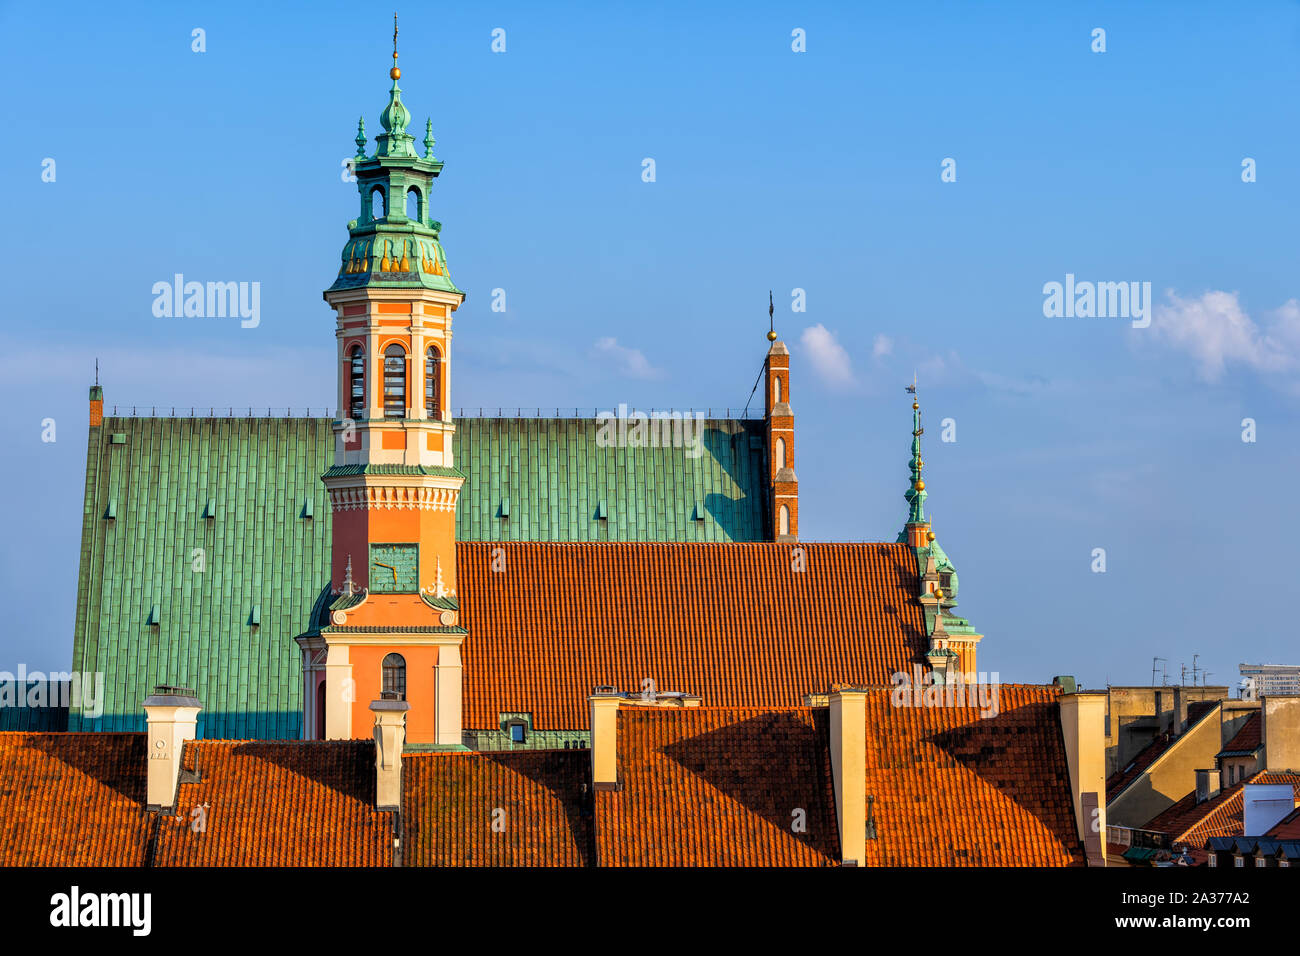 Dächer von historischen Häusern, Jesuitenkirche, und Johannes Kathedrale, Altstadt Dächer in der Stadt Warschau, Polen. Stockfoto